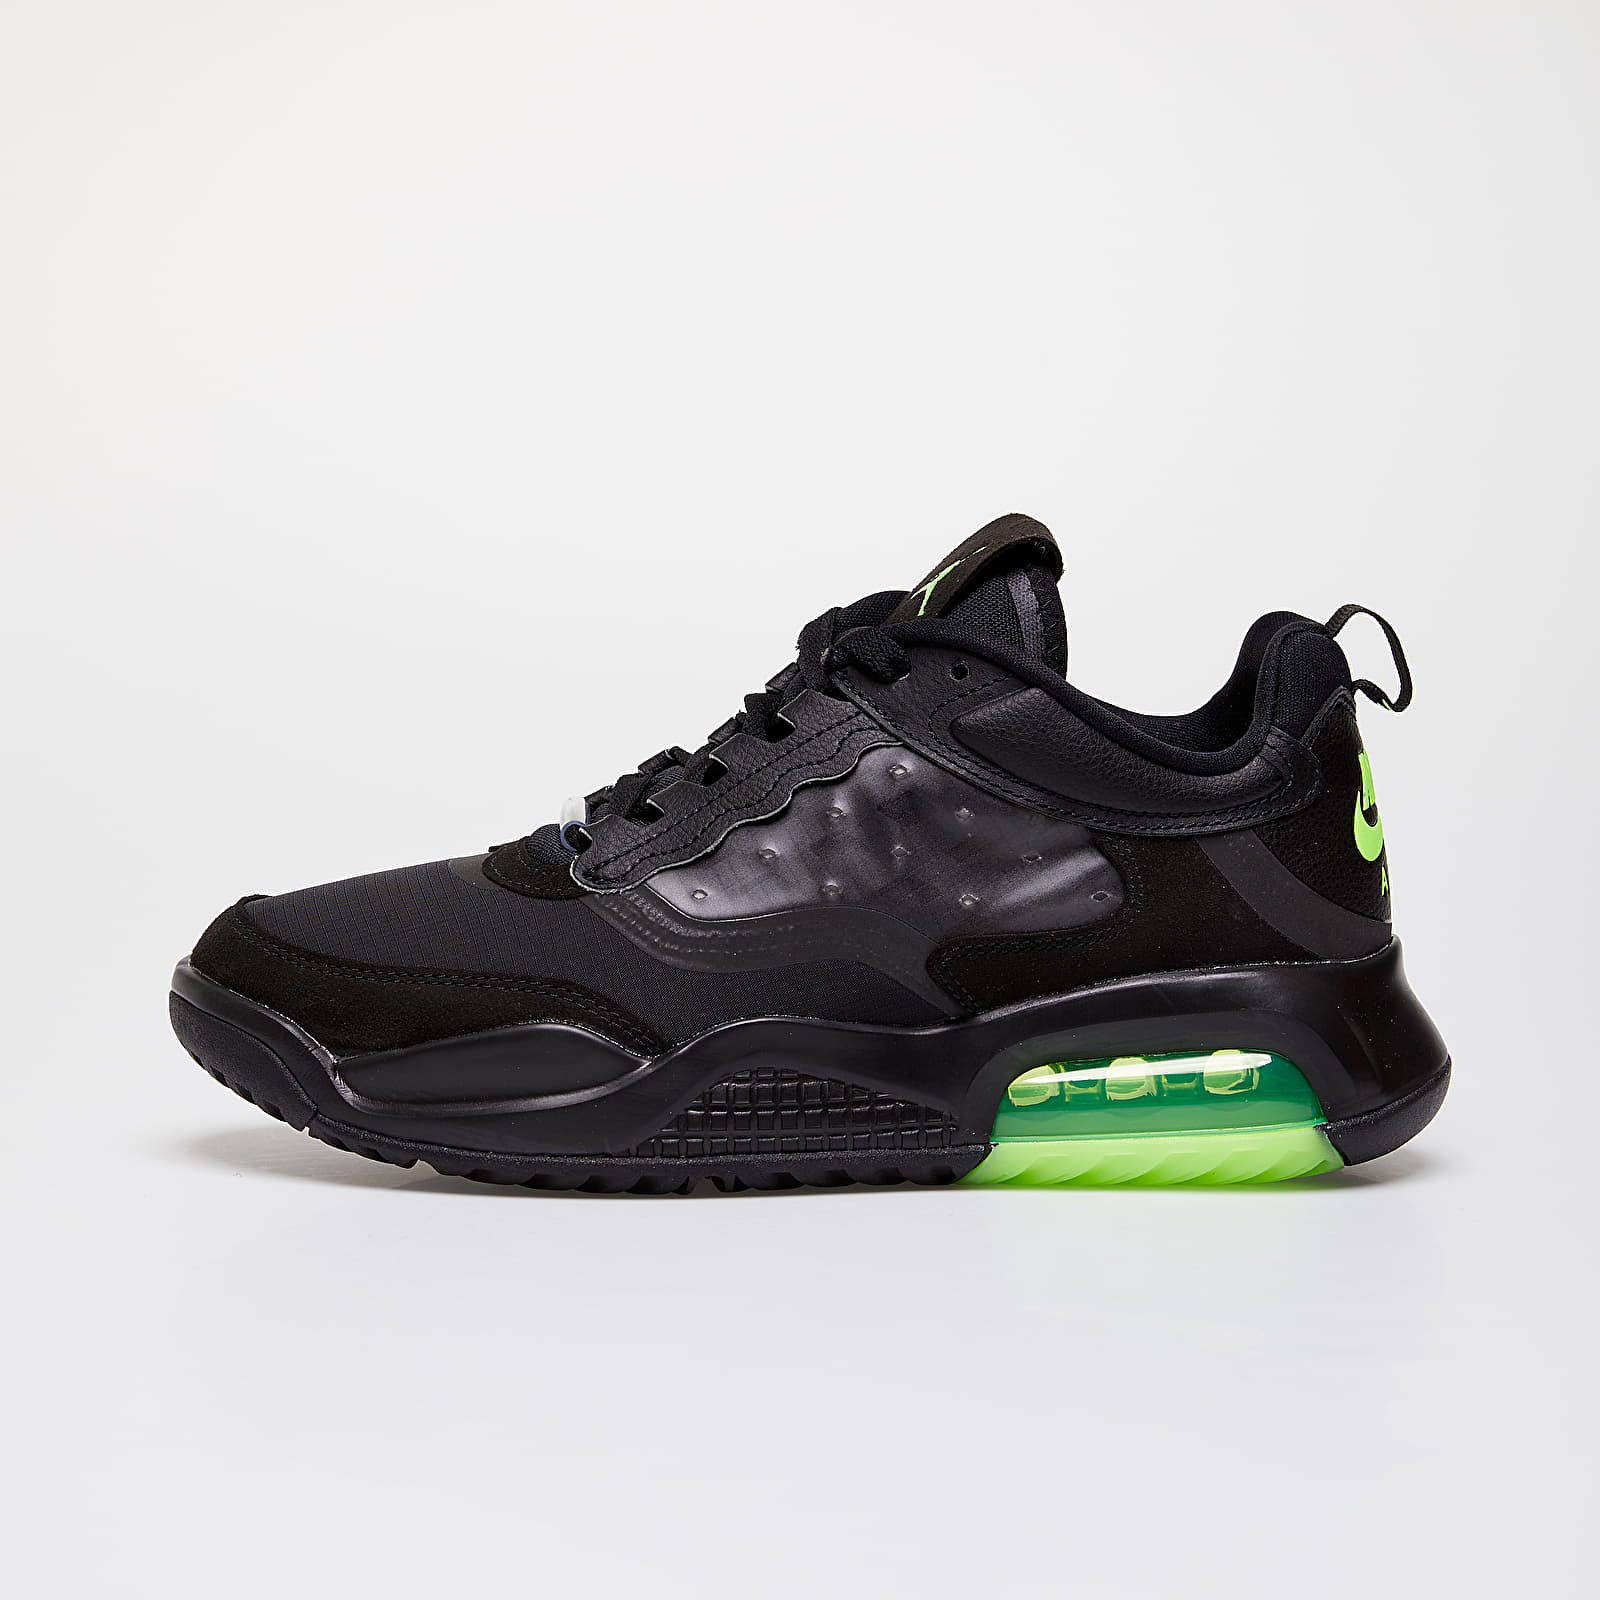 Încălțăminte și sneakerși pentru bărbați Jordan Max 200 Black/ Electric Green-Black